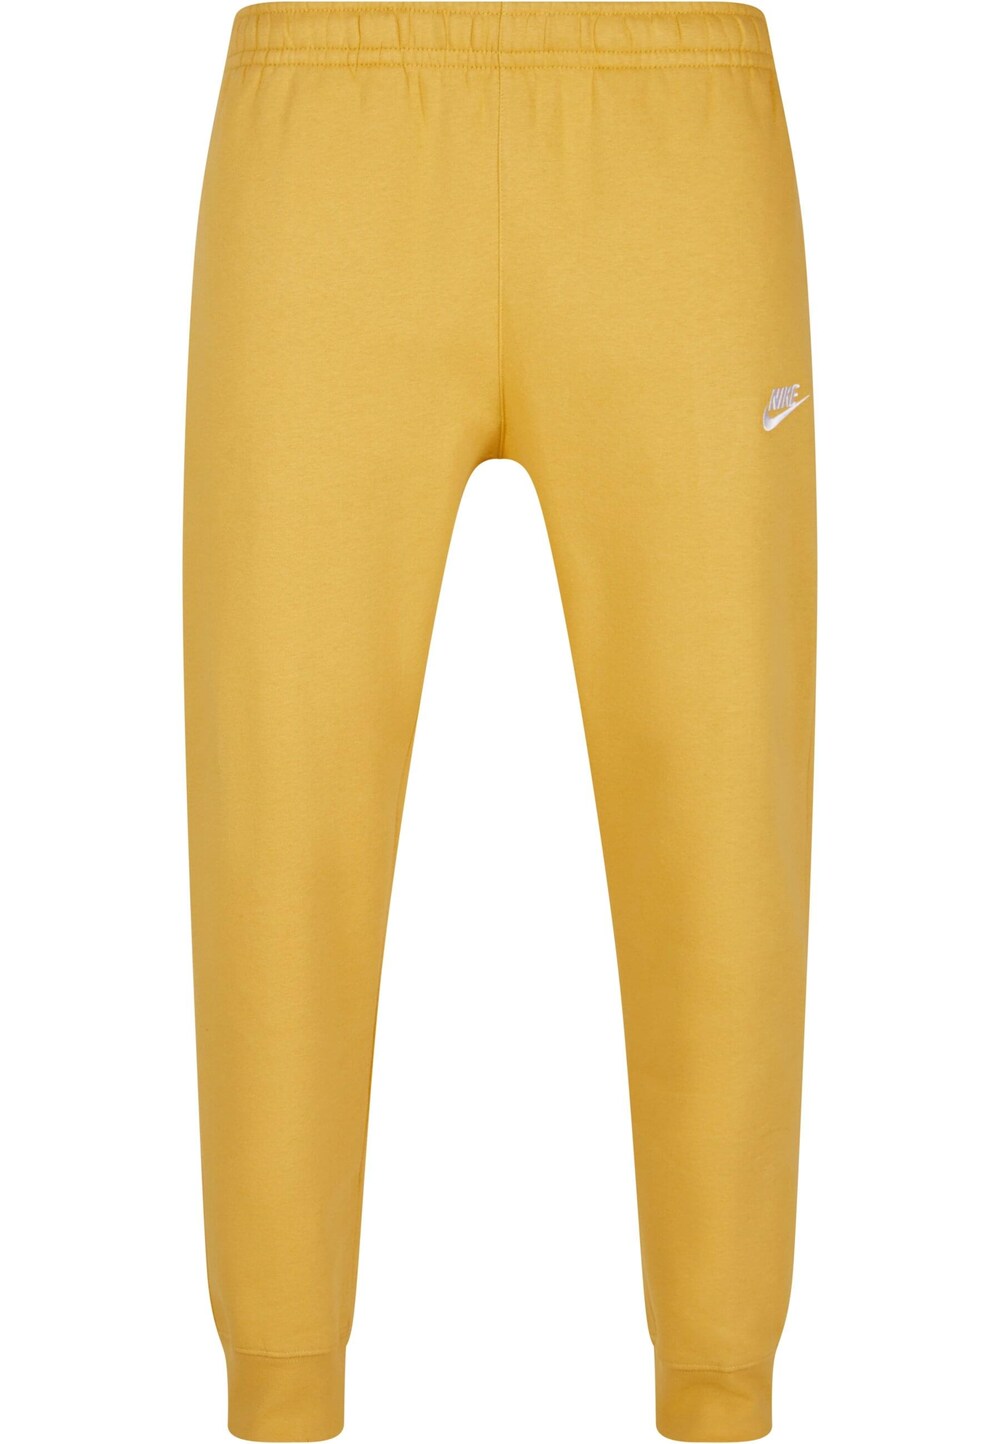 Зауженные брюки Nike Sportswear Club Fleece, желтое золото спортивные шорты nike обсидиан благородный красный клубное золото клубное золото